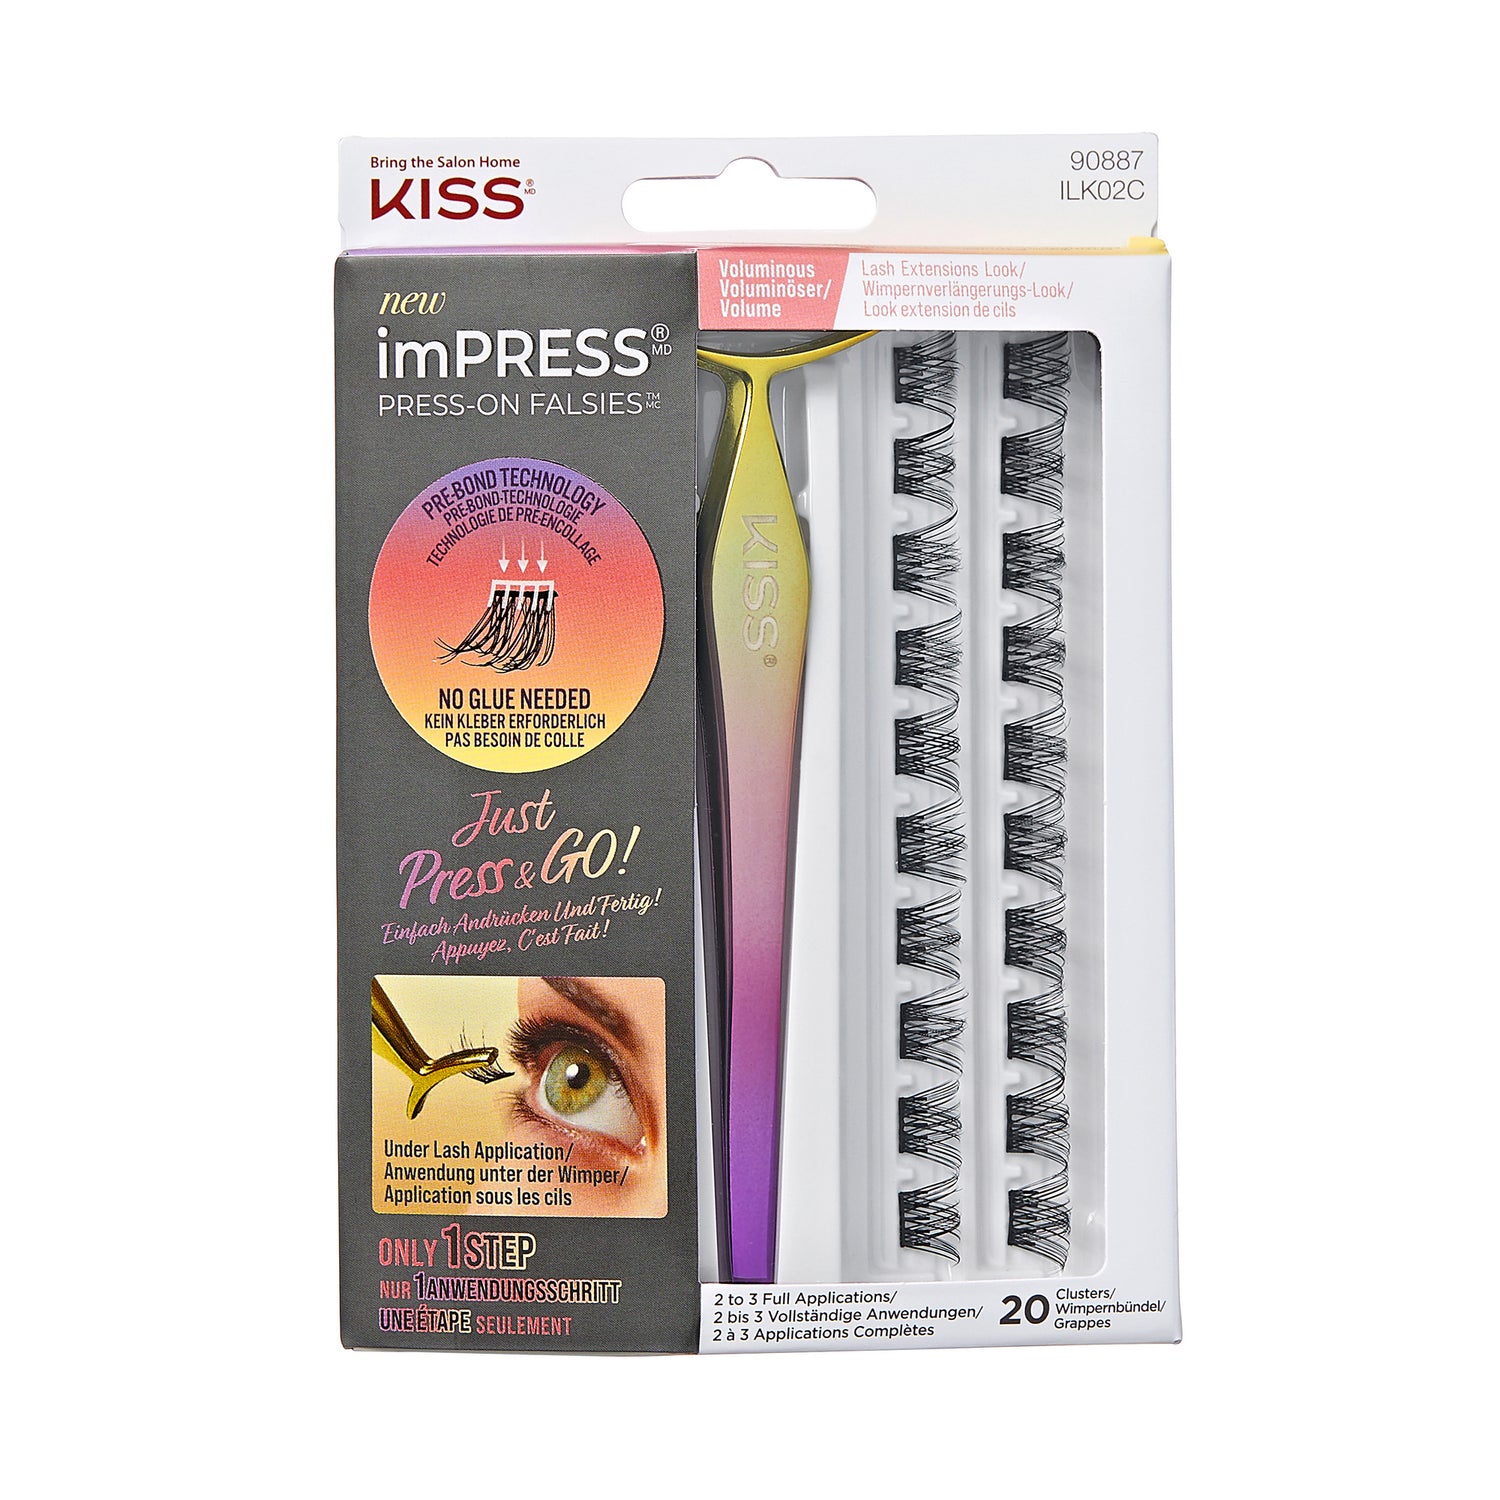 KISS IMPRESS PRESS ON FALSIES KIT 02 Box